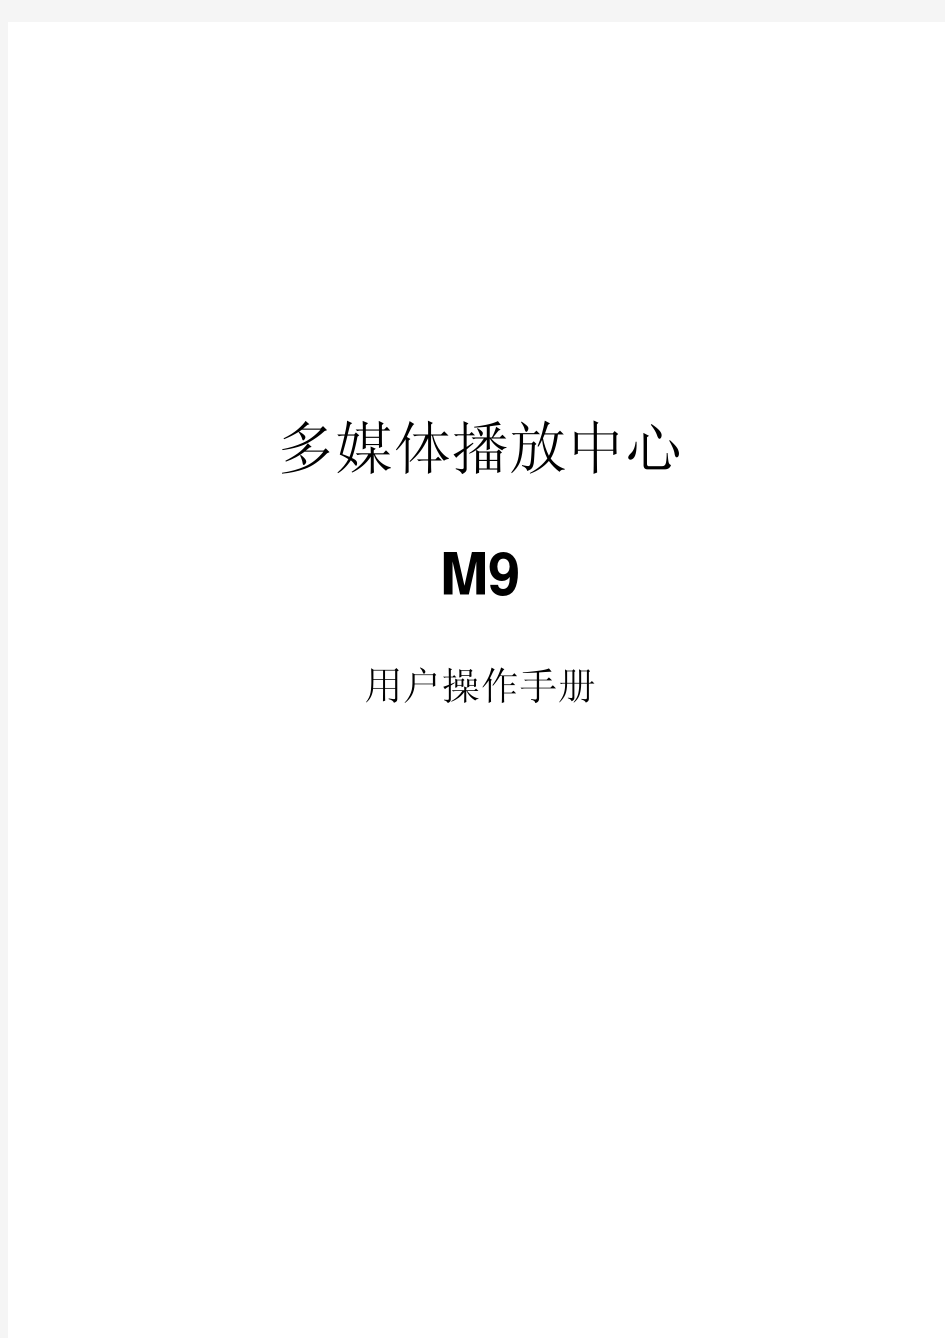 忆捷高清播放器M9中文说明书